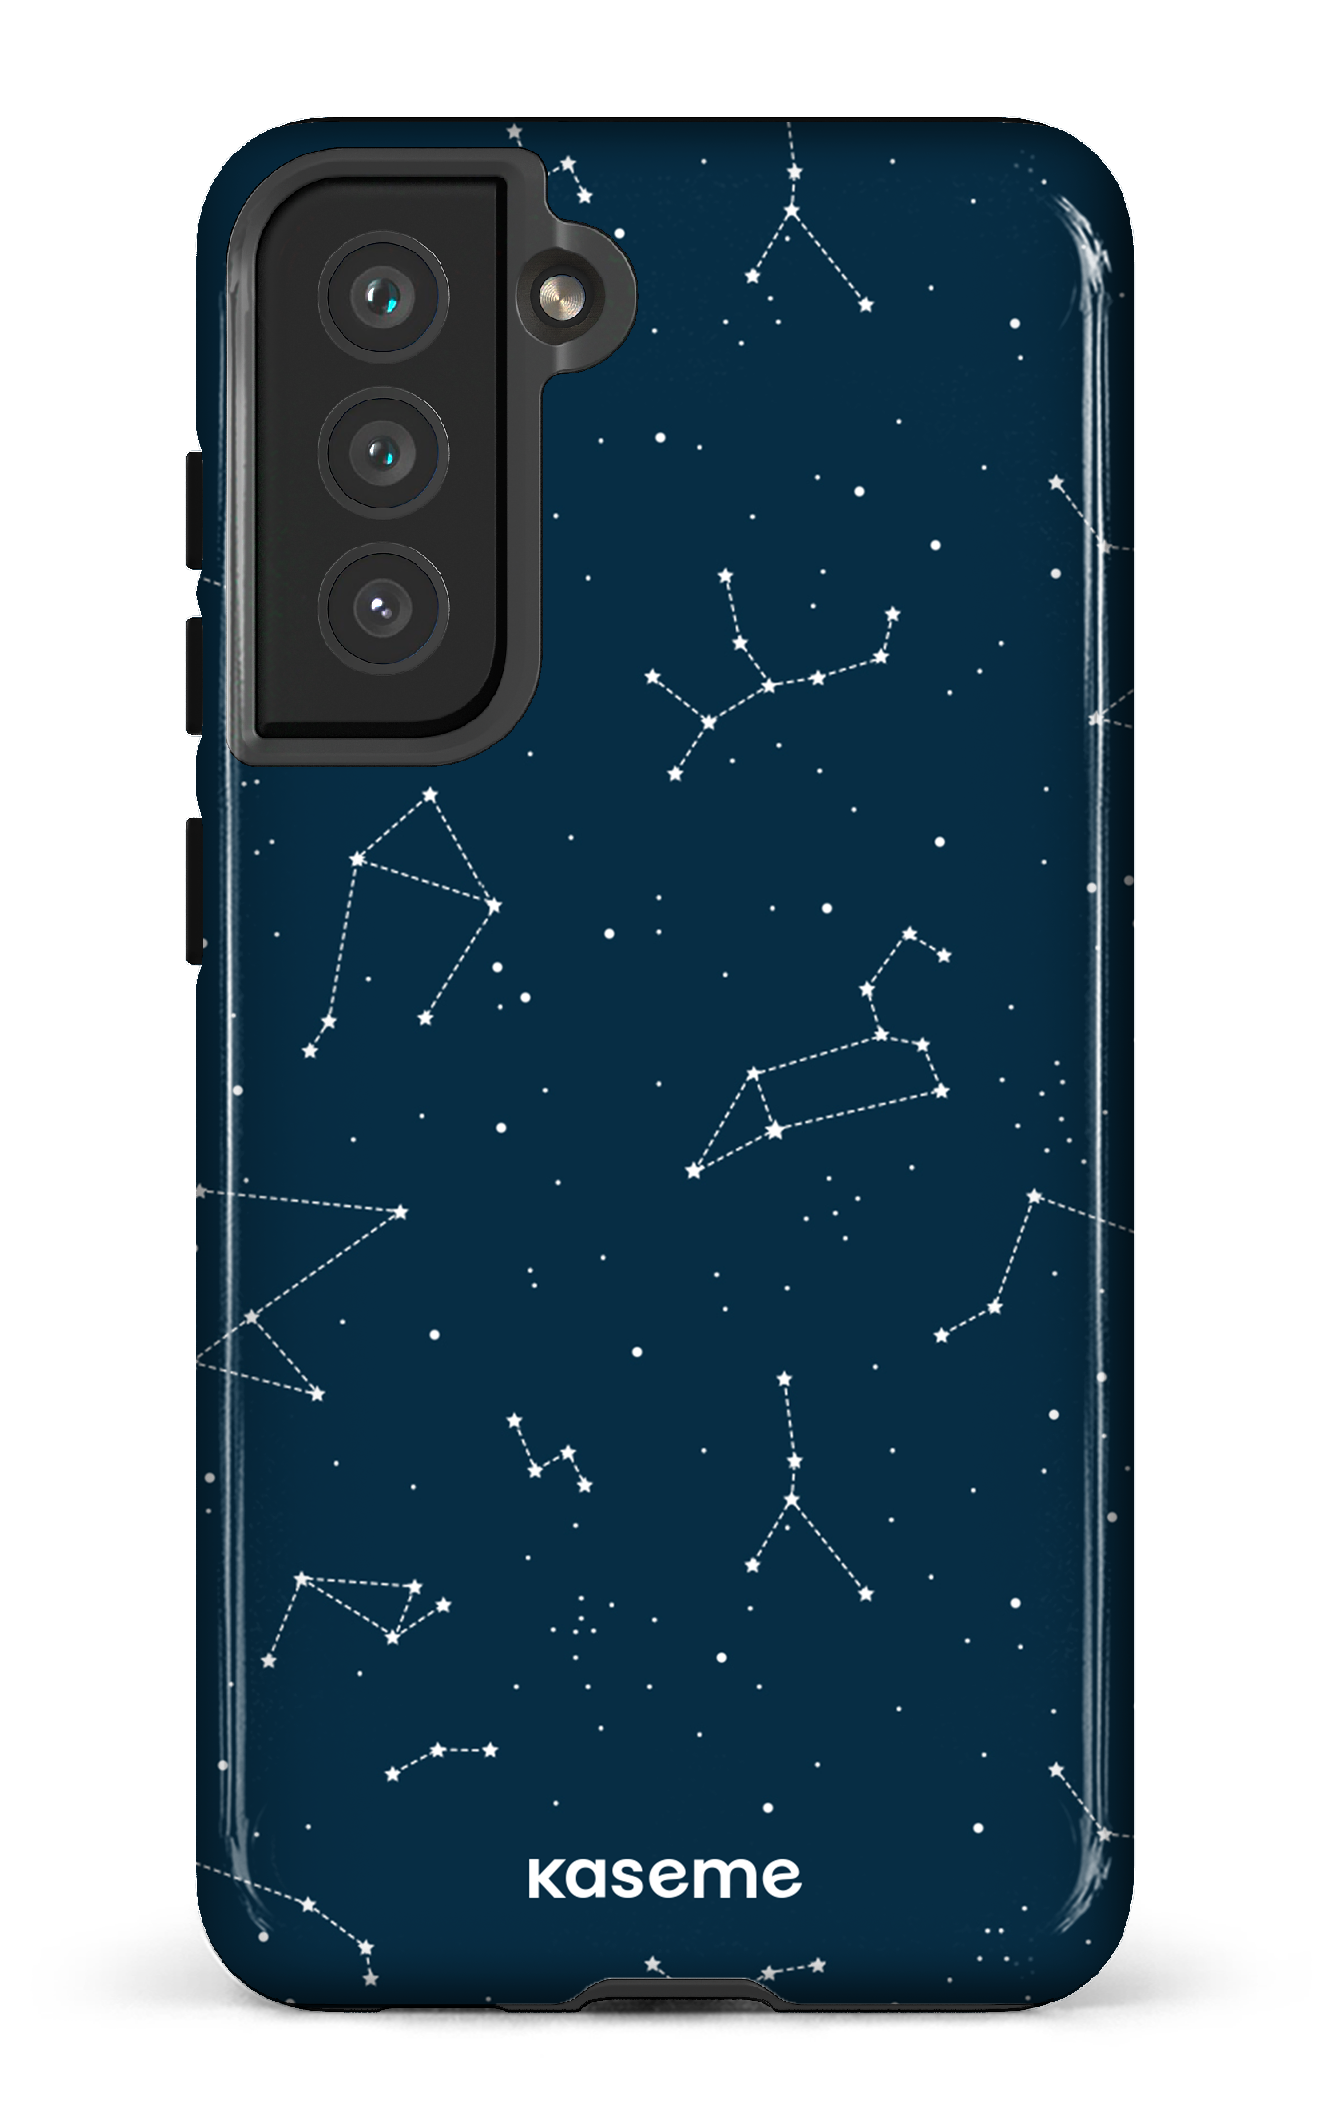 Cosmos - Galaxy S21 FE